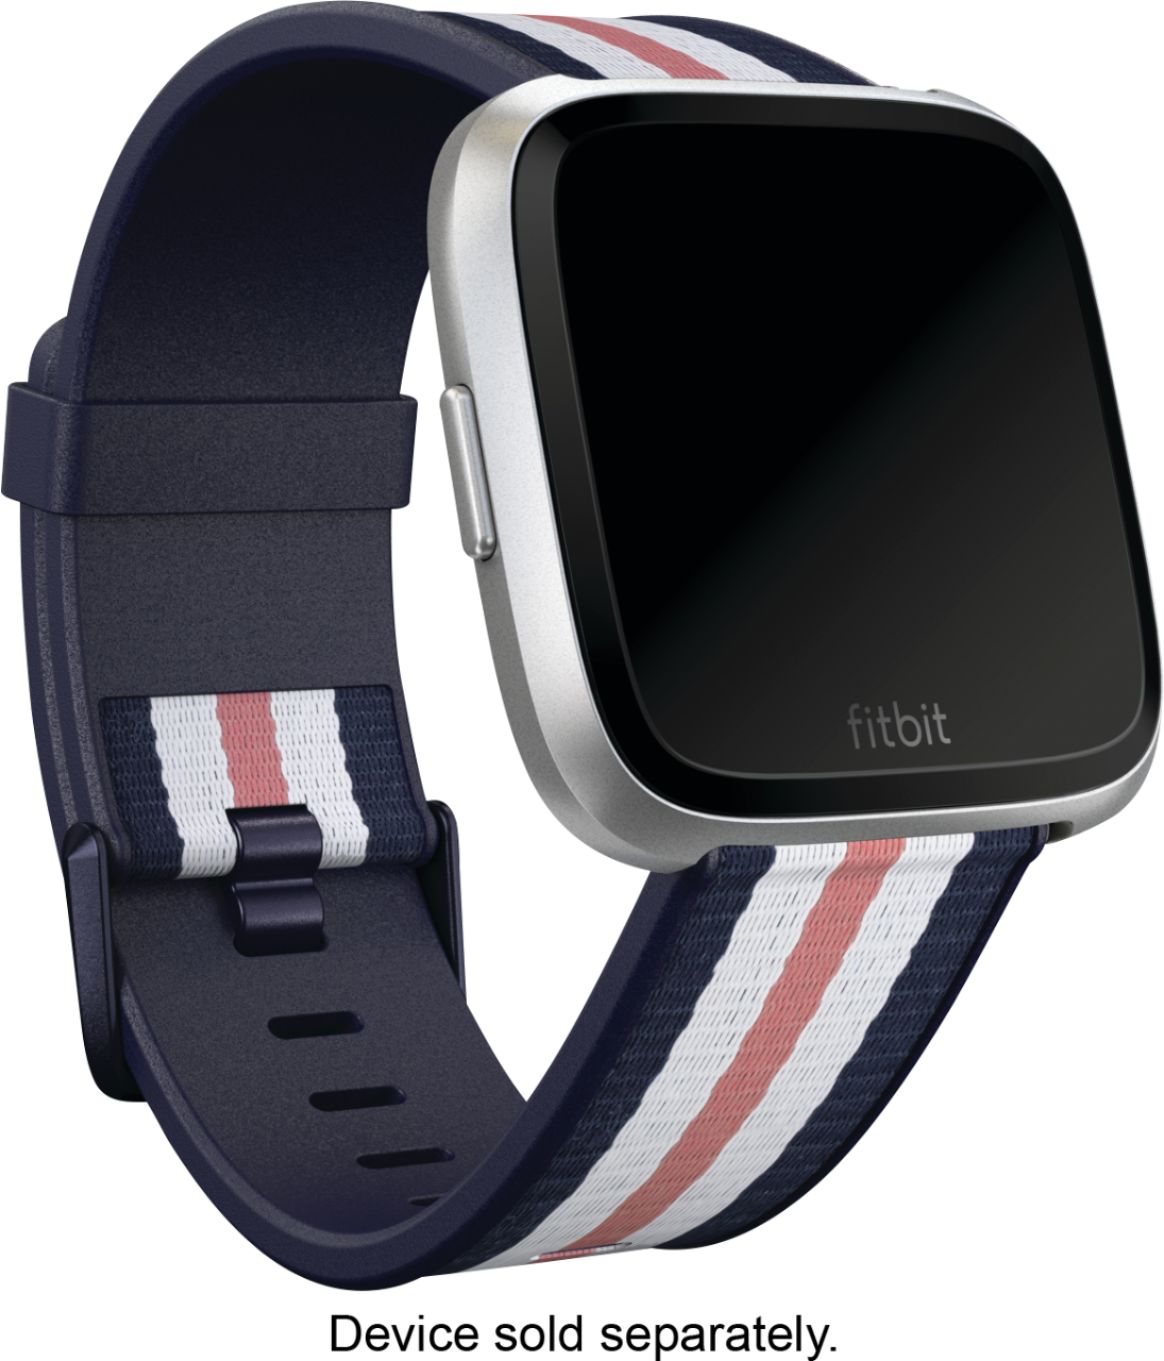 fitbit hybrid watch